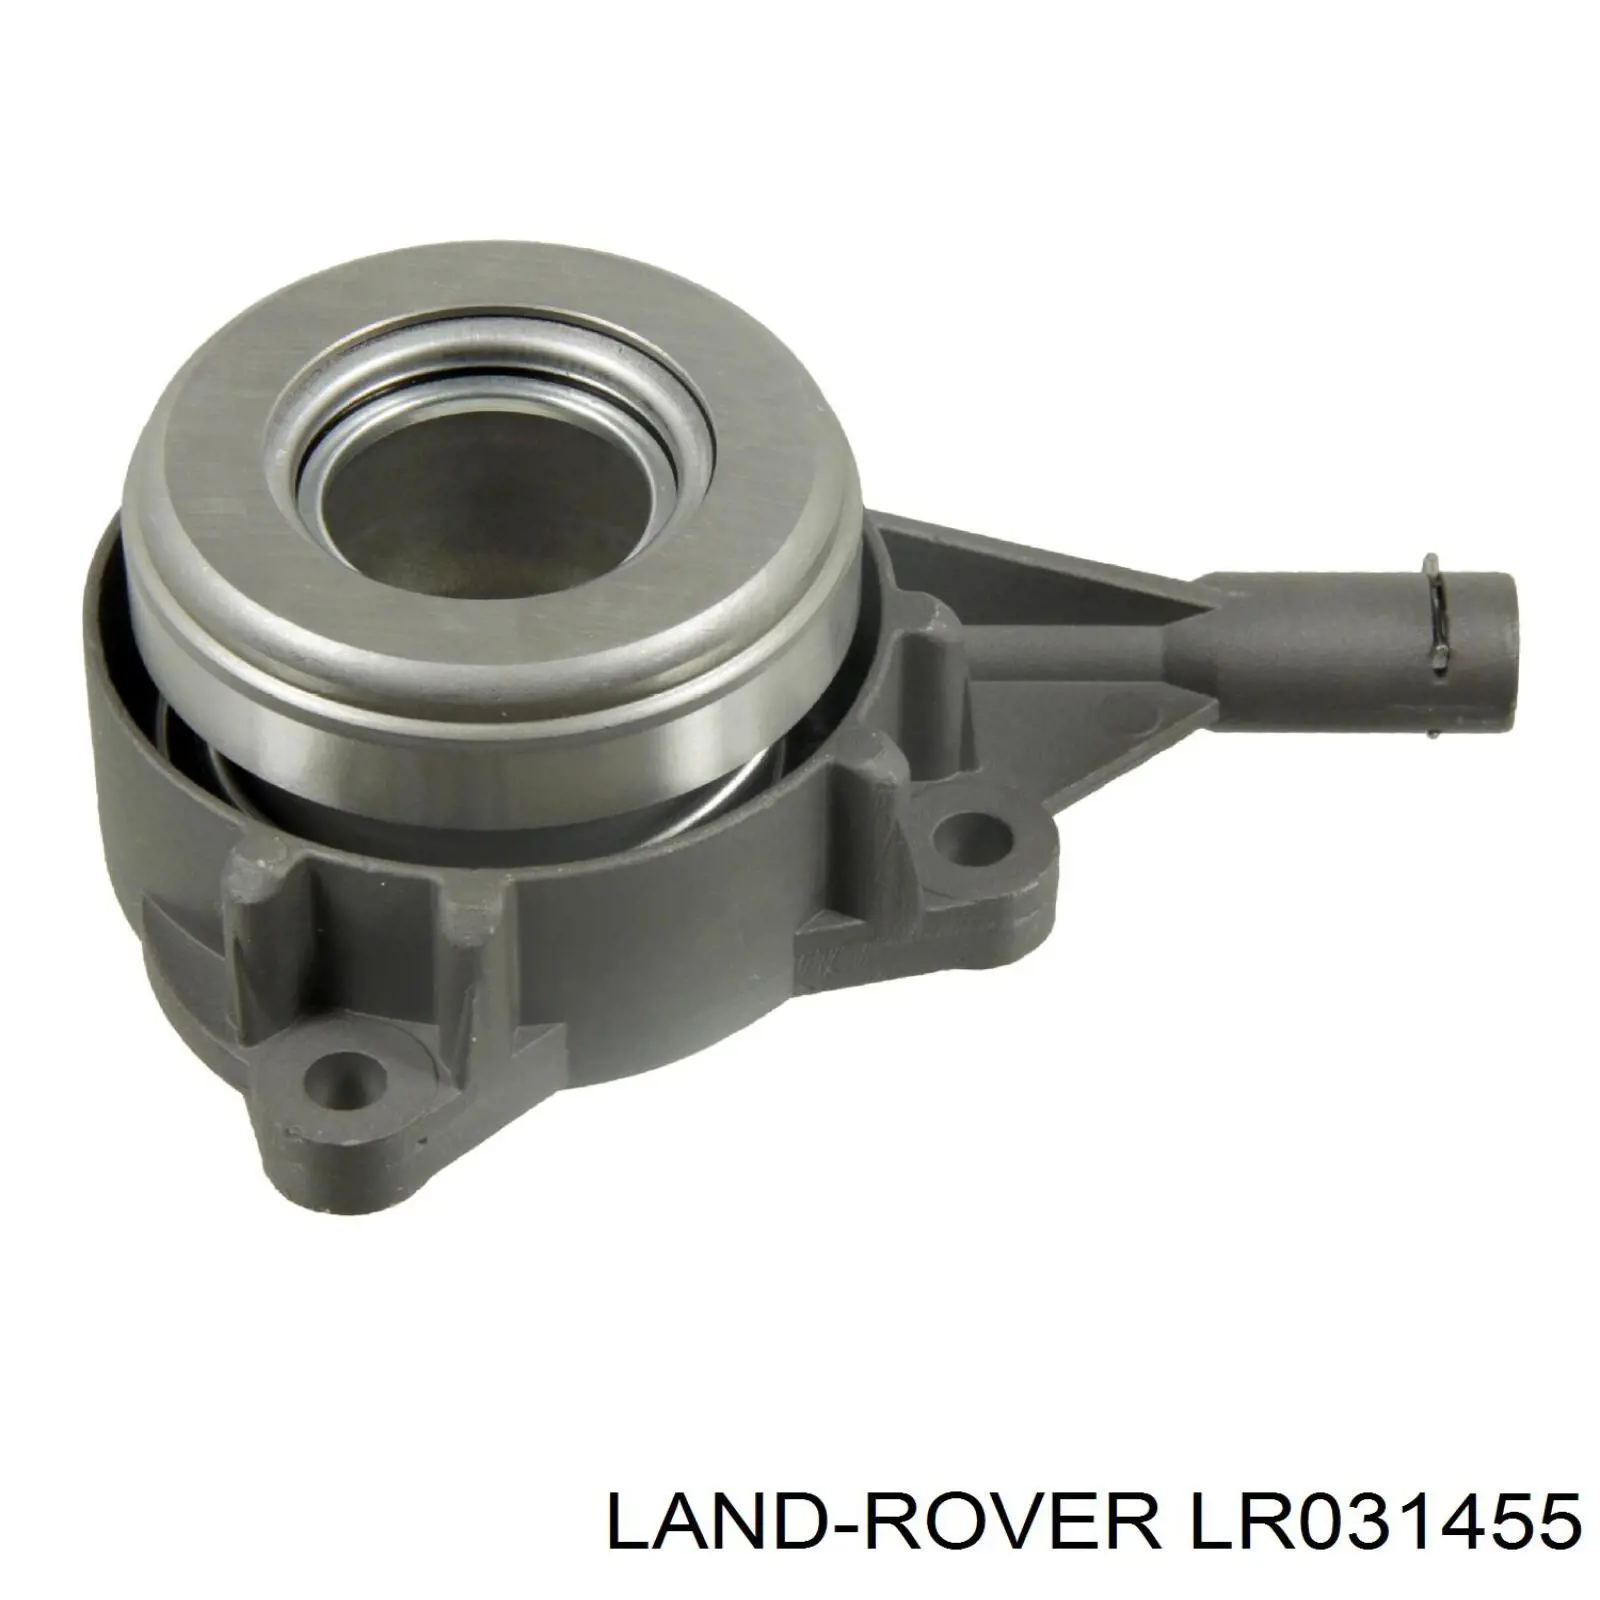 LR019597 Land Rover cilindro de trabalho de embraiagem montado com rolamento de desengate